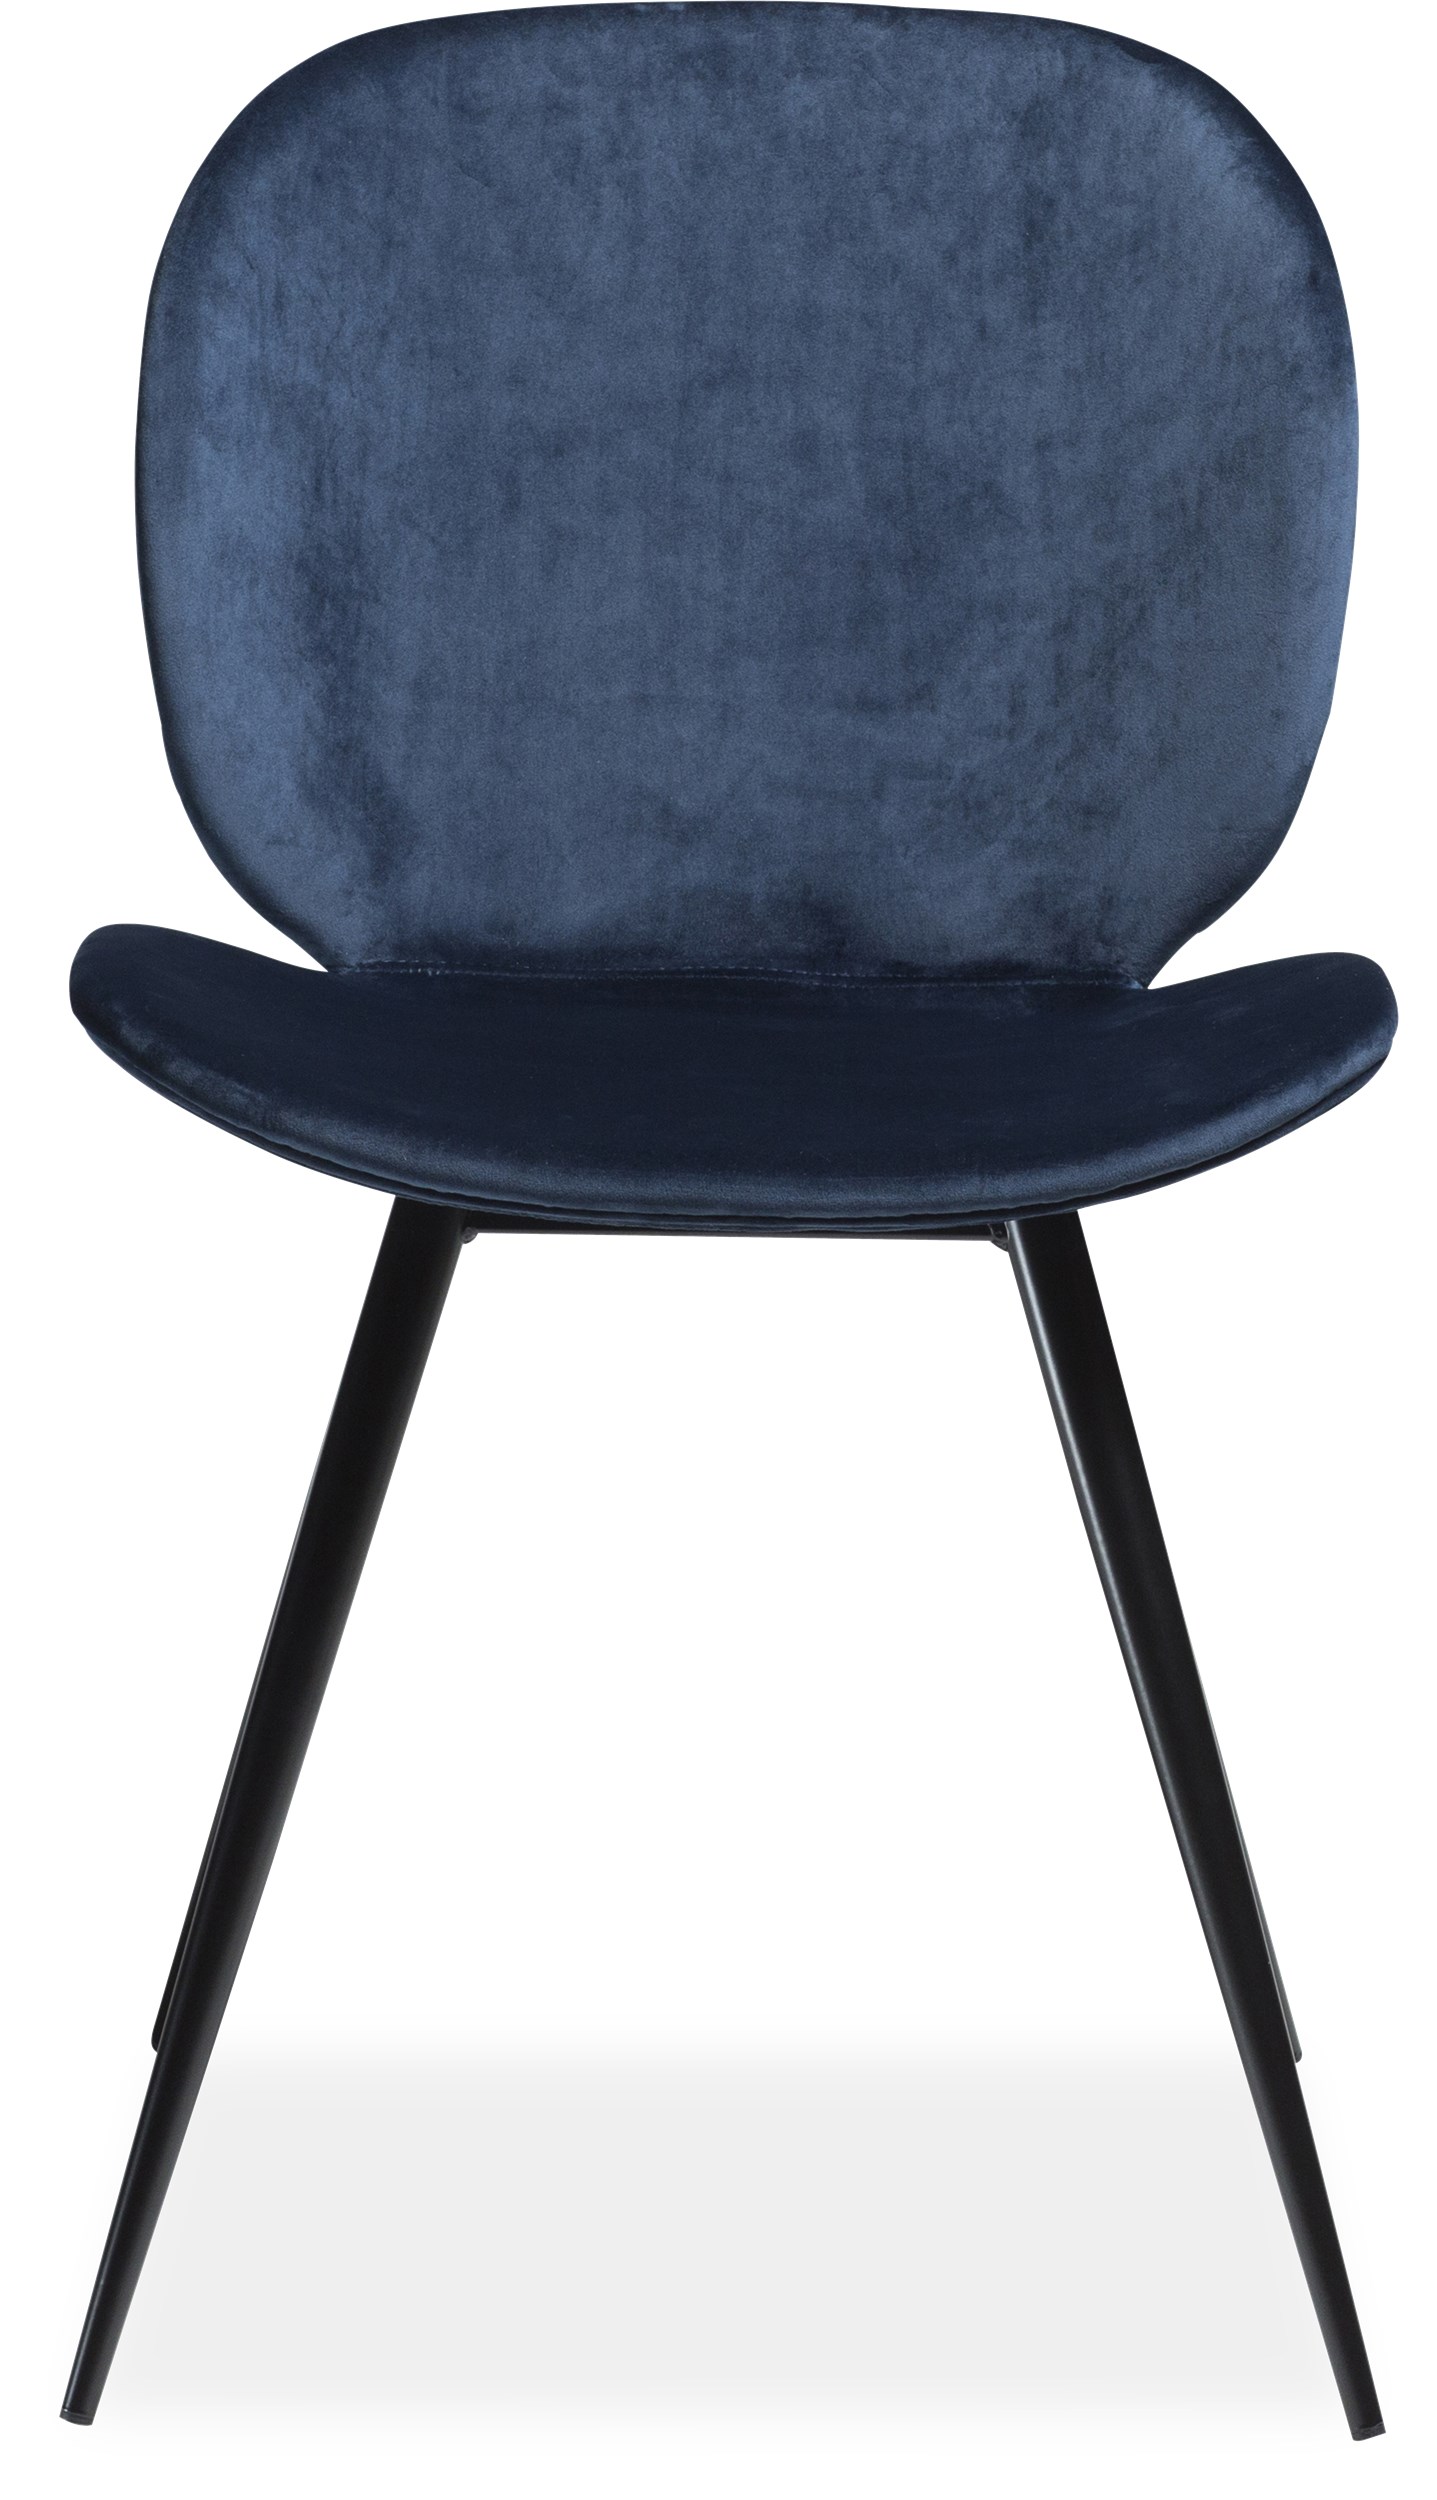 Cadiz matstol - Sits i midnight blue velourtyg och ben i svartlackerad metall